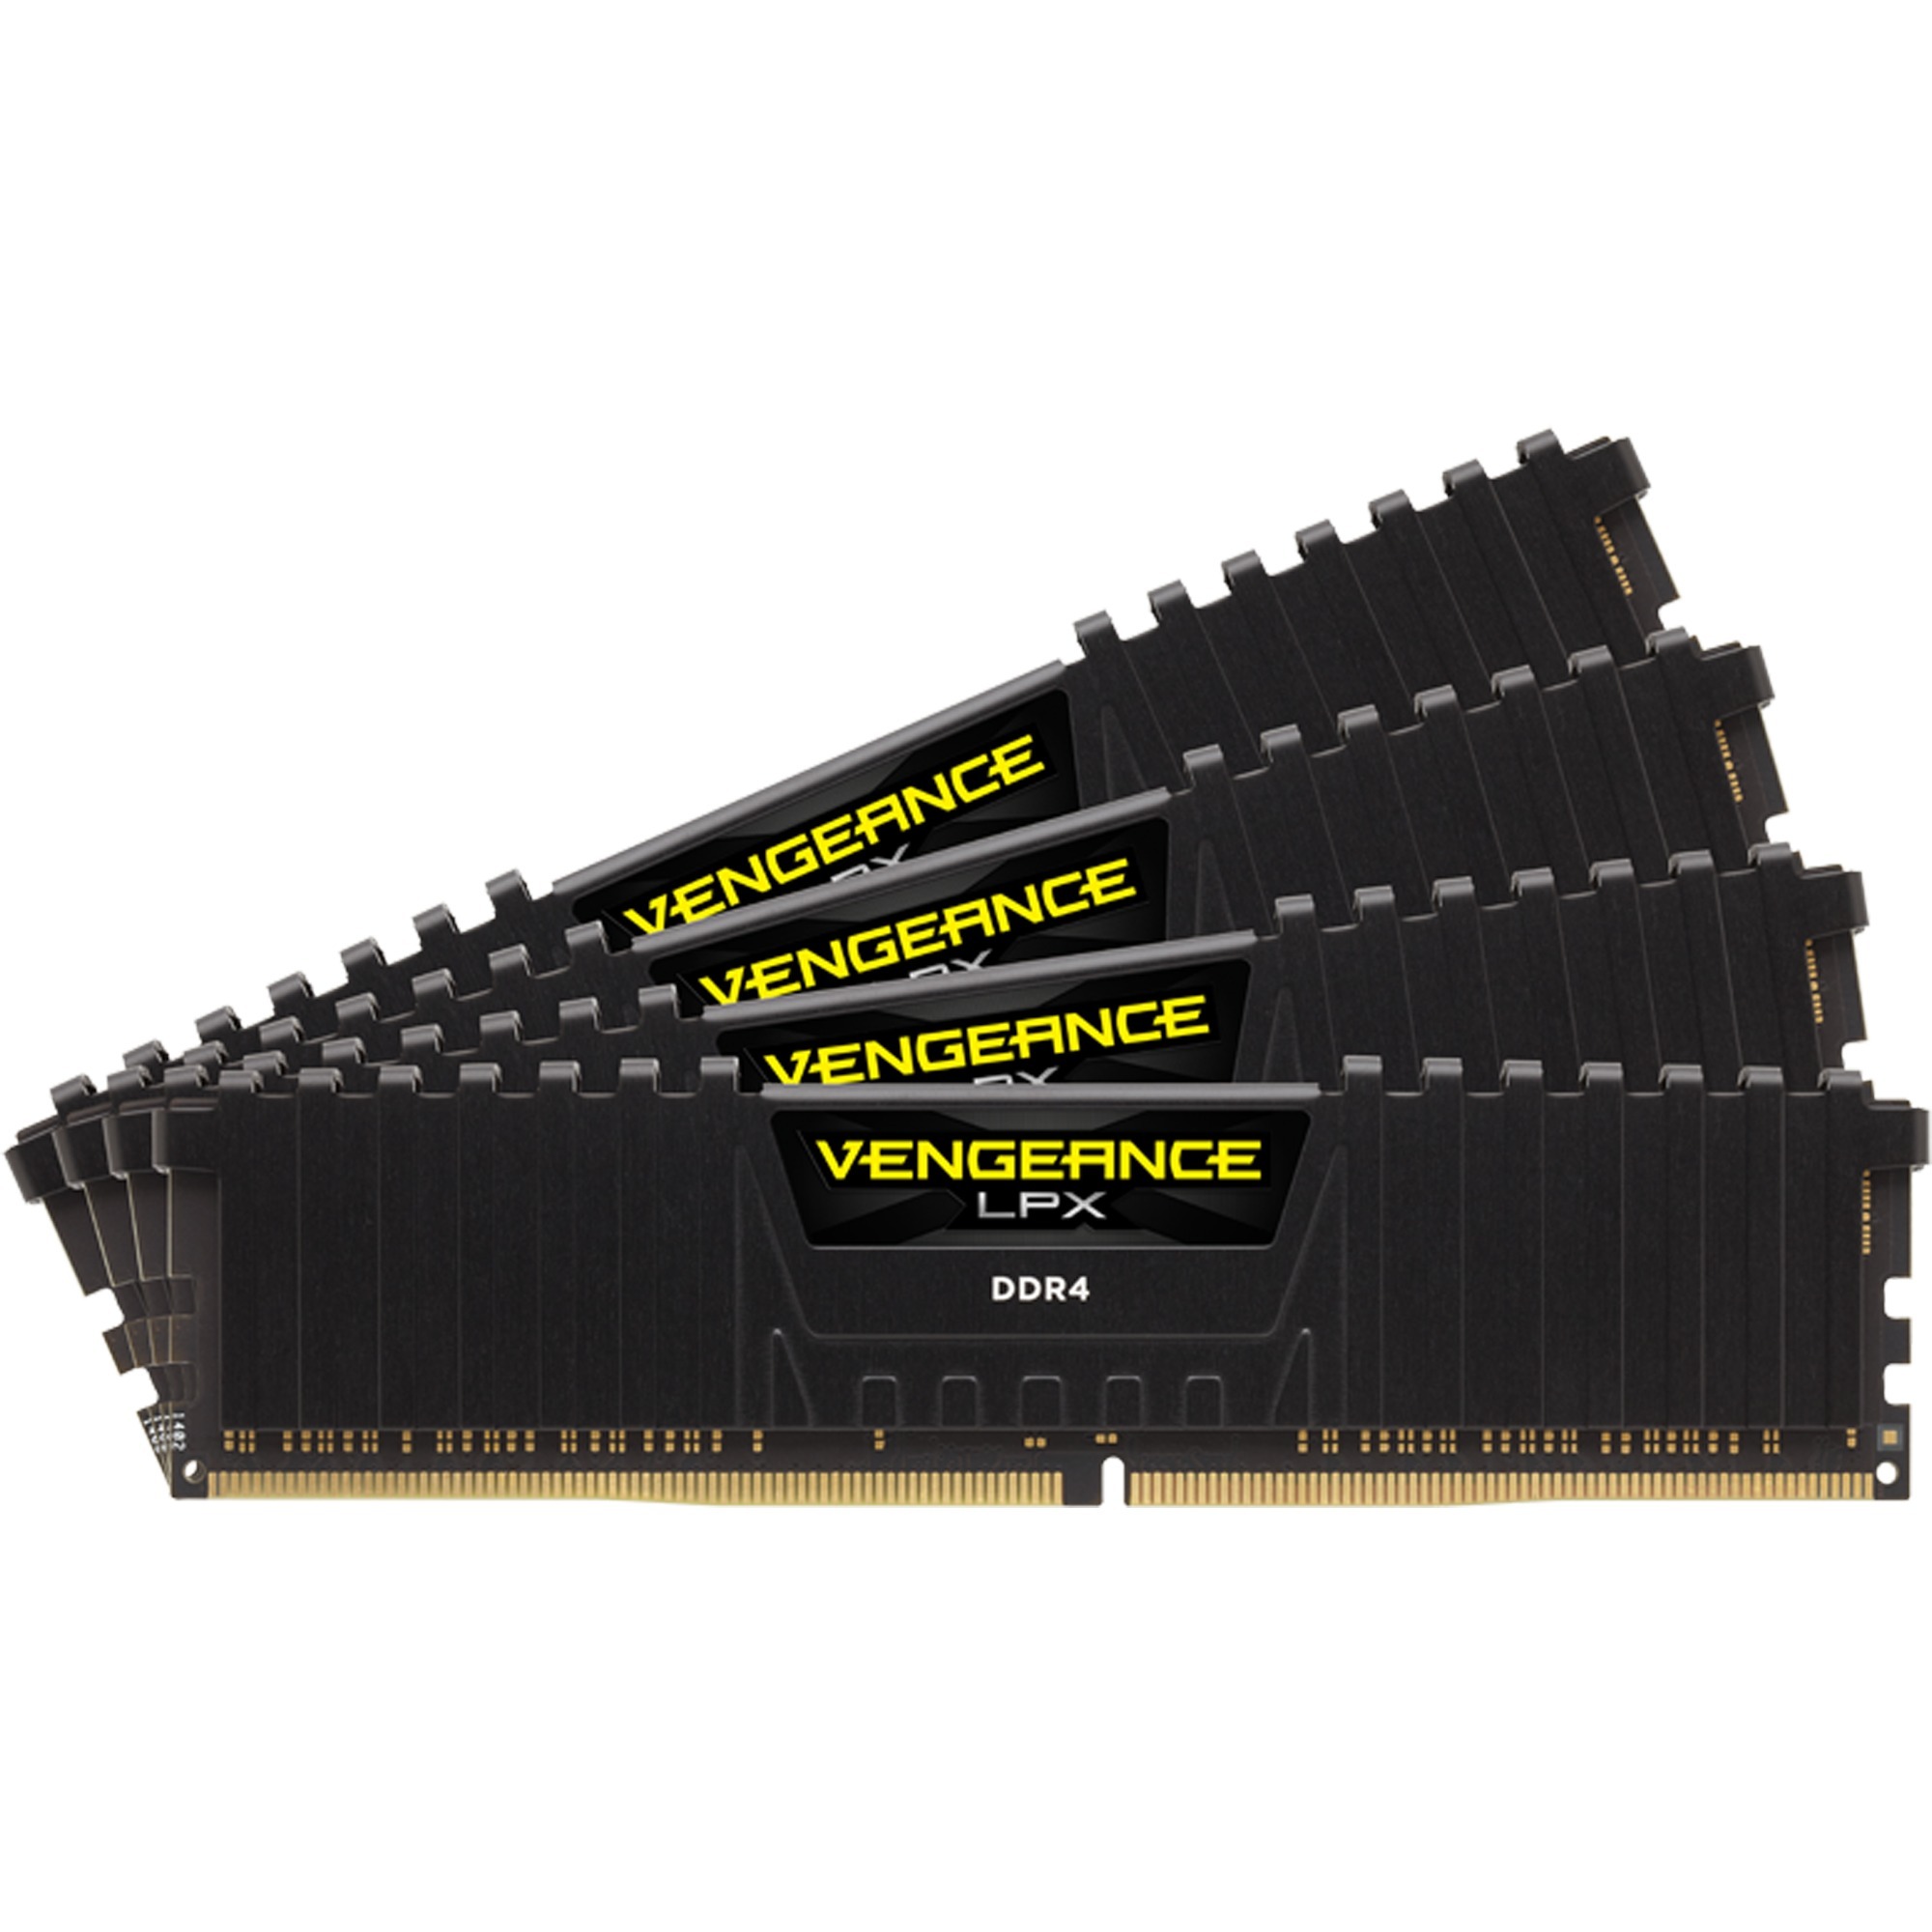 Vengeance LPX 64GB DDR4-2400 moduł pamięci 2400 Mhz, Pamięc operacyjna